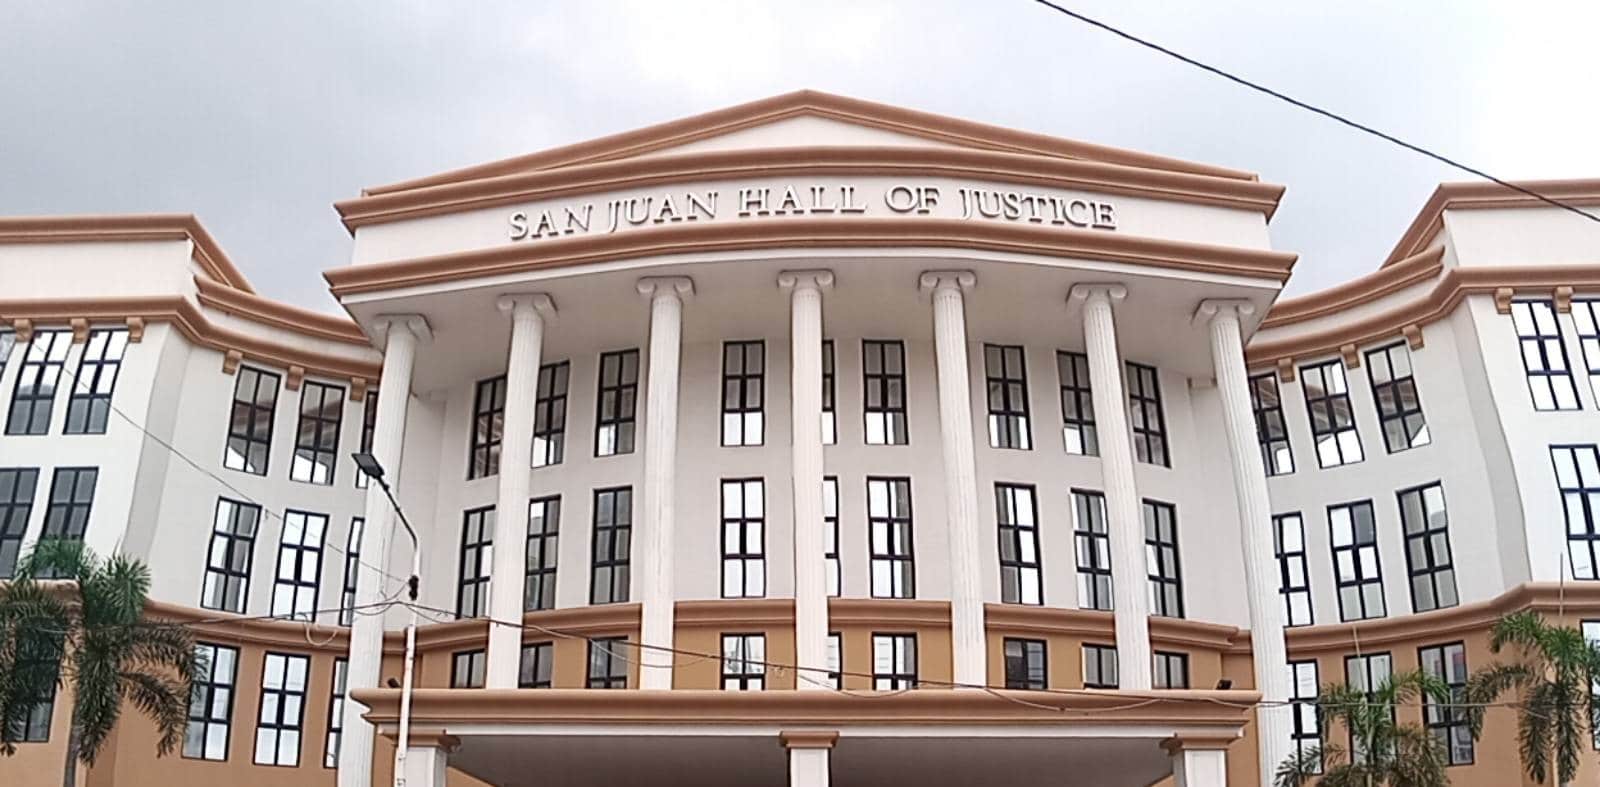 San Juan Hall of Justice Façade